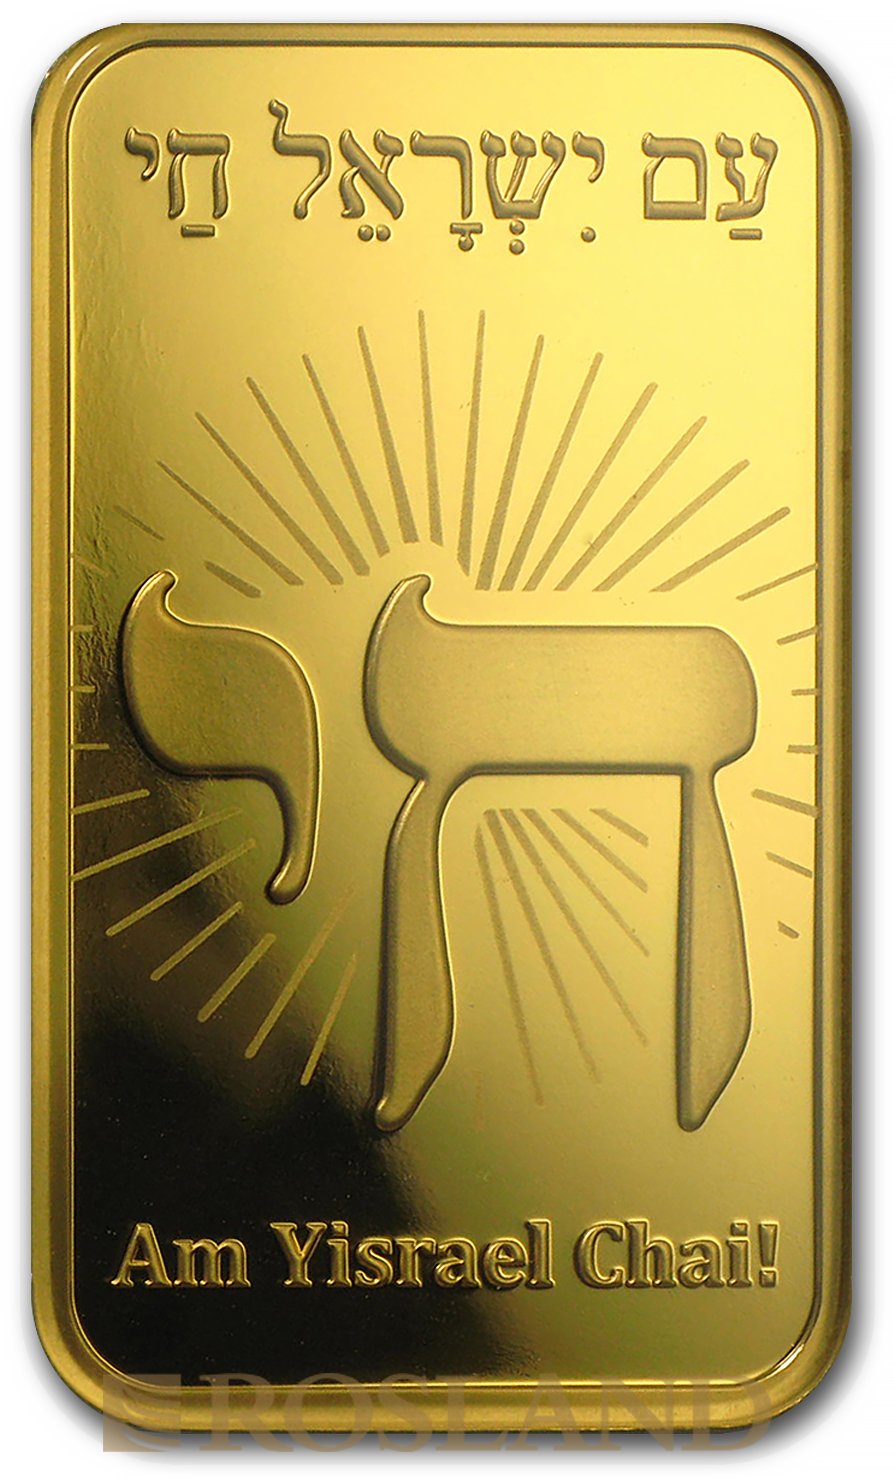 1 Unze Goldbarren PAMP Religion - Am Yisrael Chai